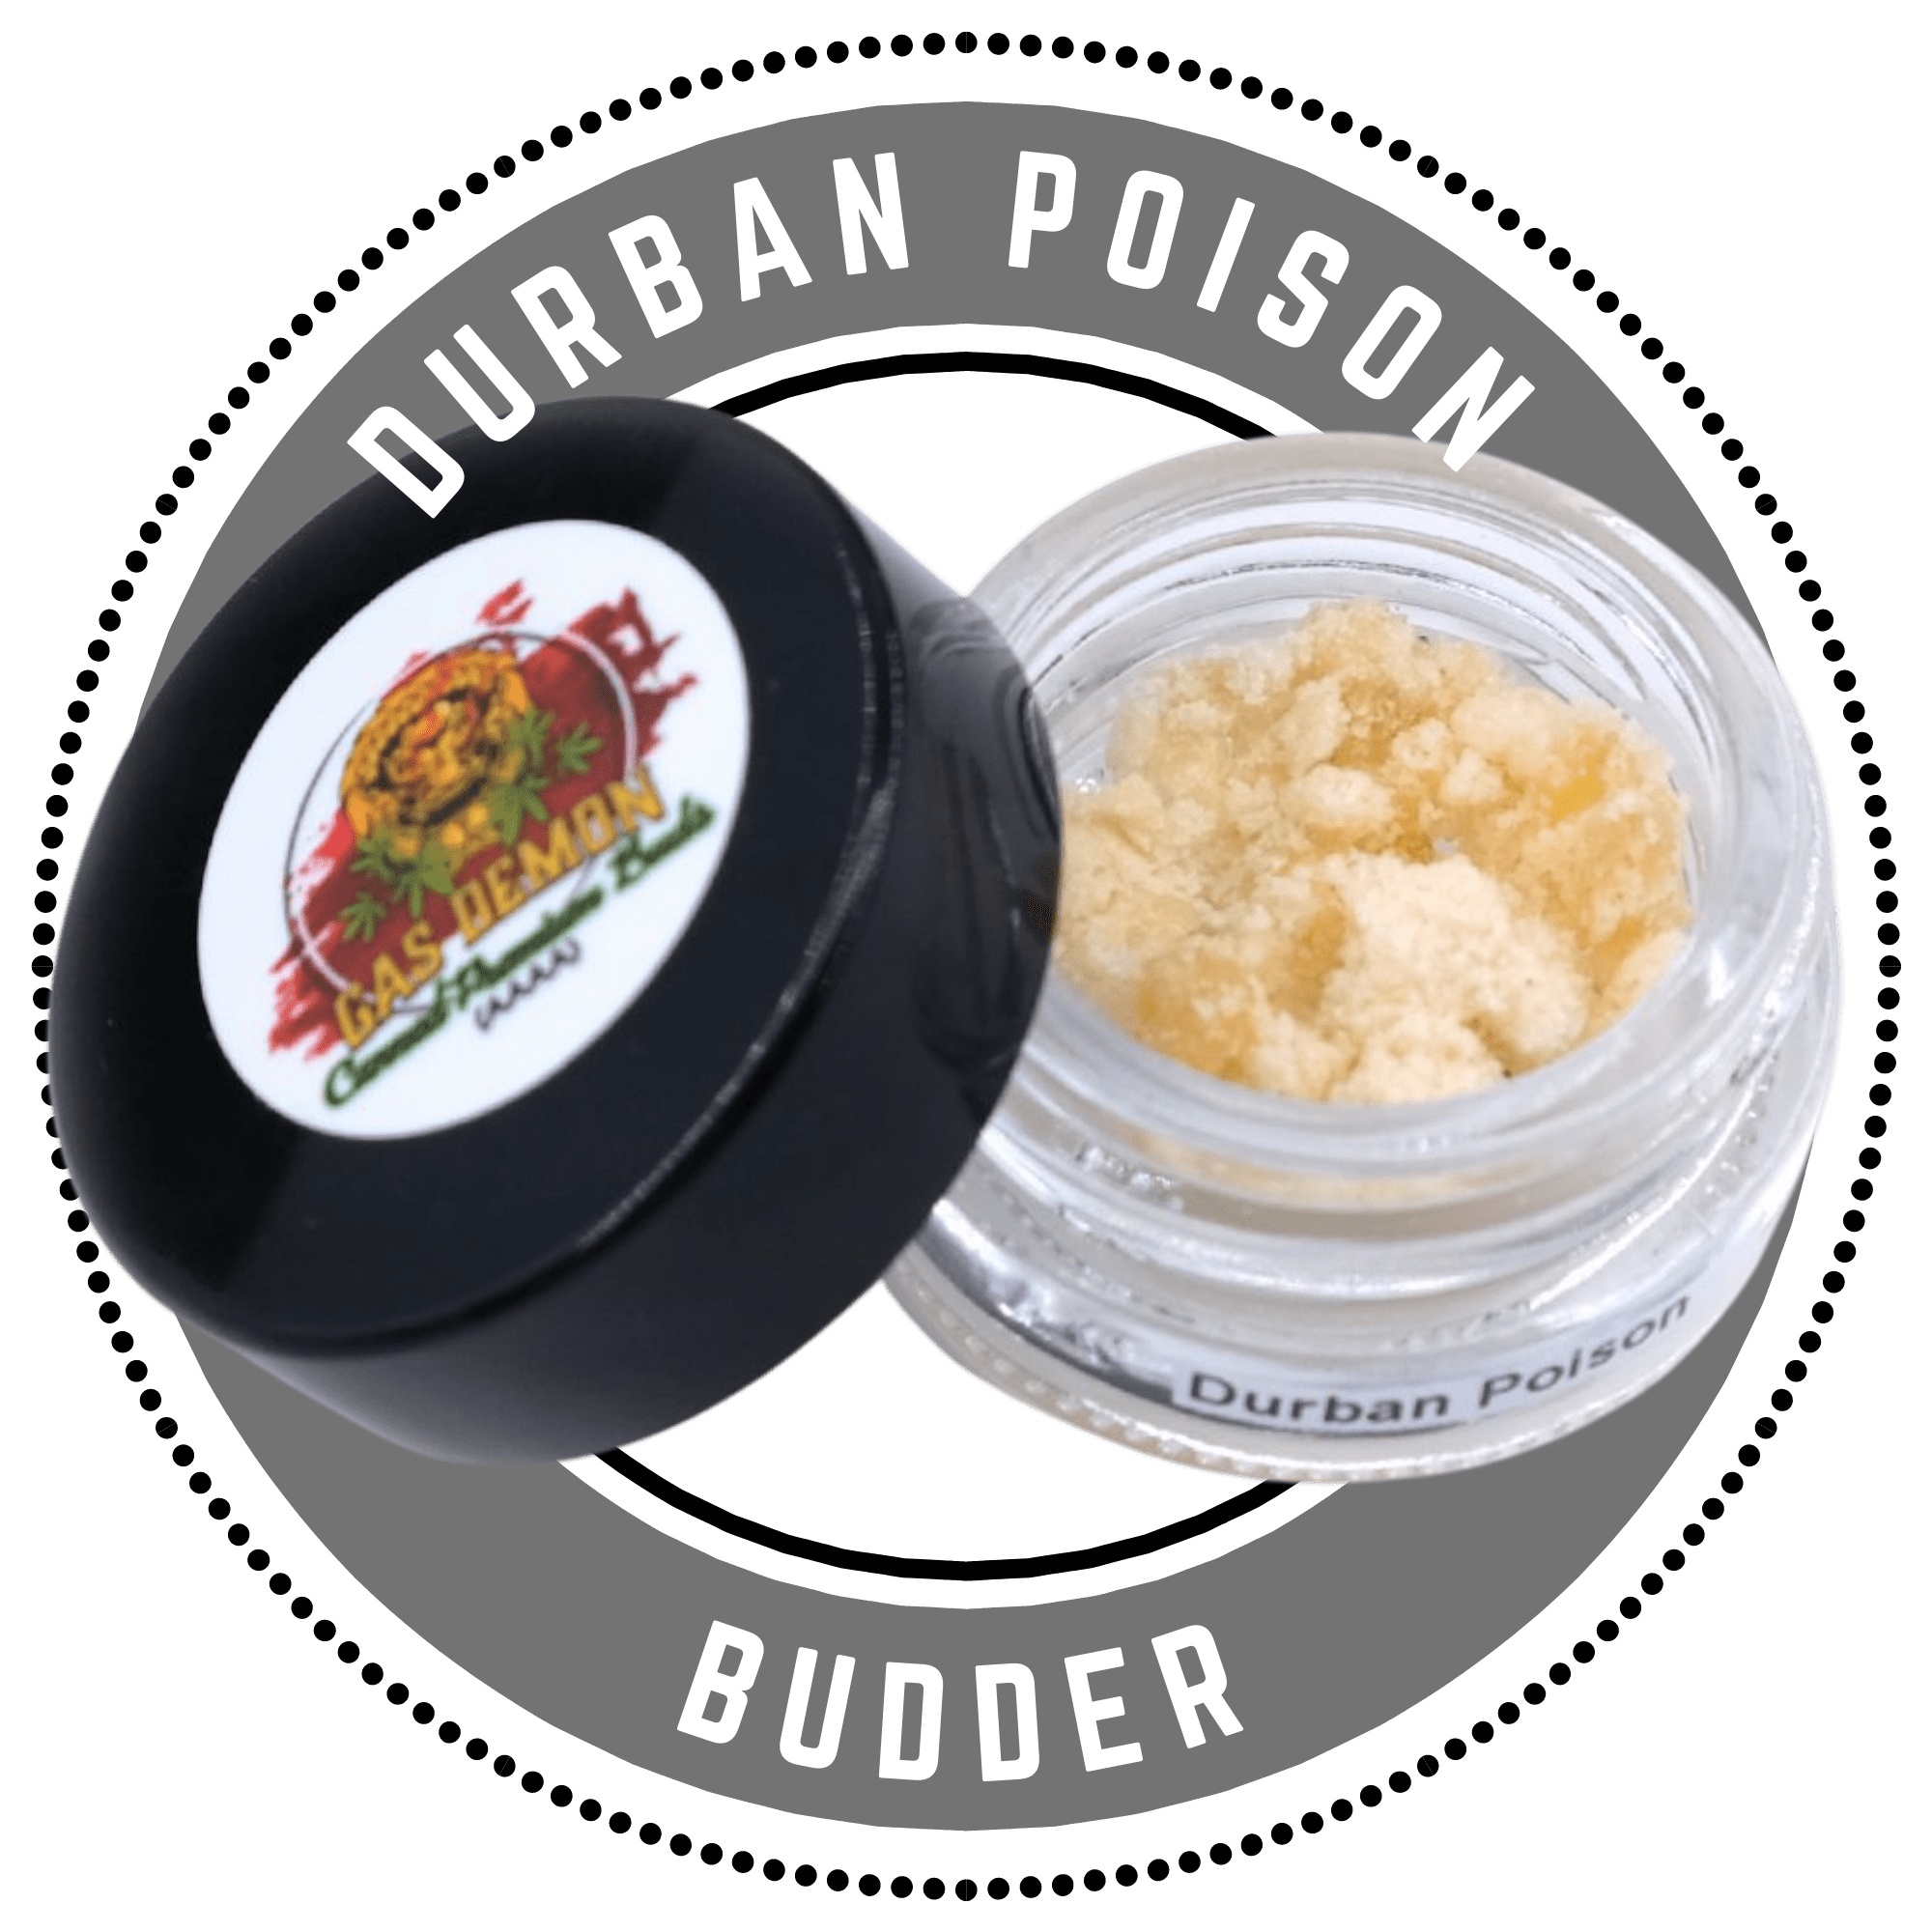 Durban Poison budder